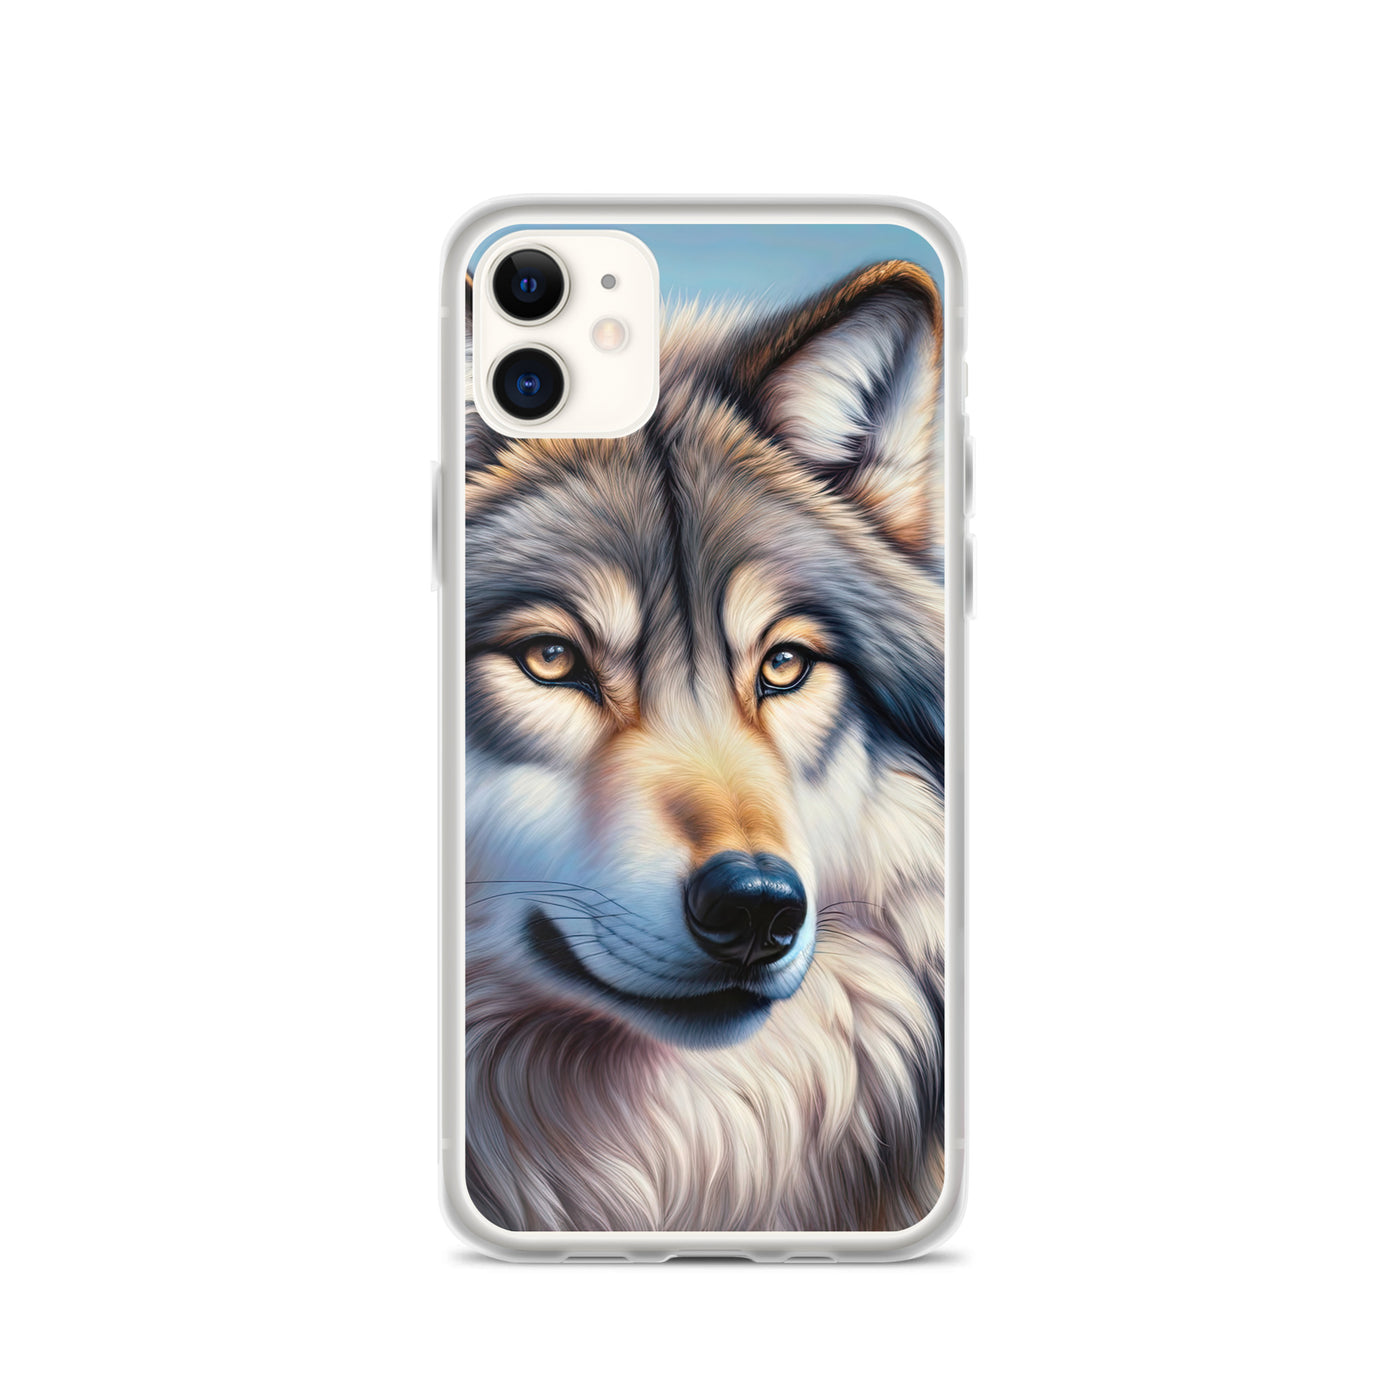 Ölgemäldeporträt eines majestätischen Wolfes mit intensiven Augen in der Berglandschaft (AN) - iPhone Schutzhülle (durchsichtig) xxx yyy zzz iPhone 11